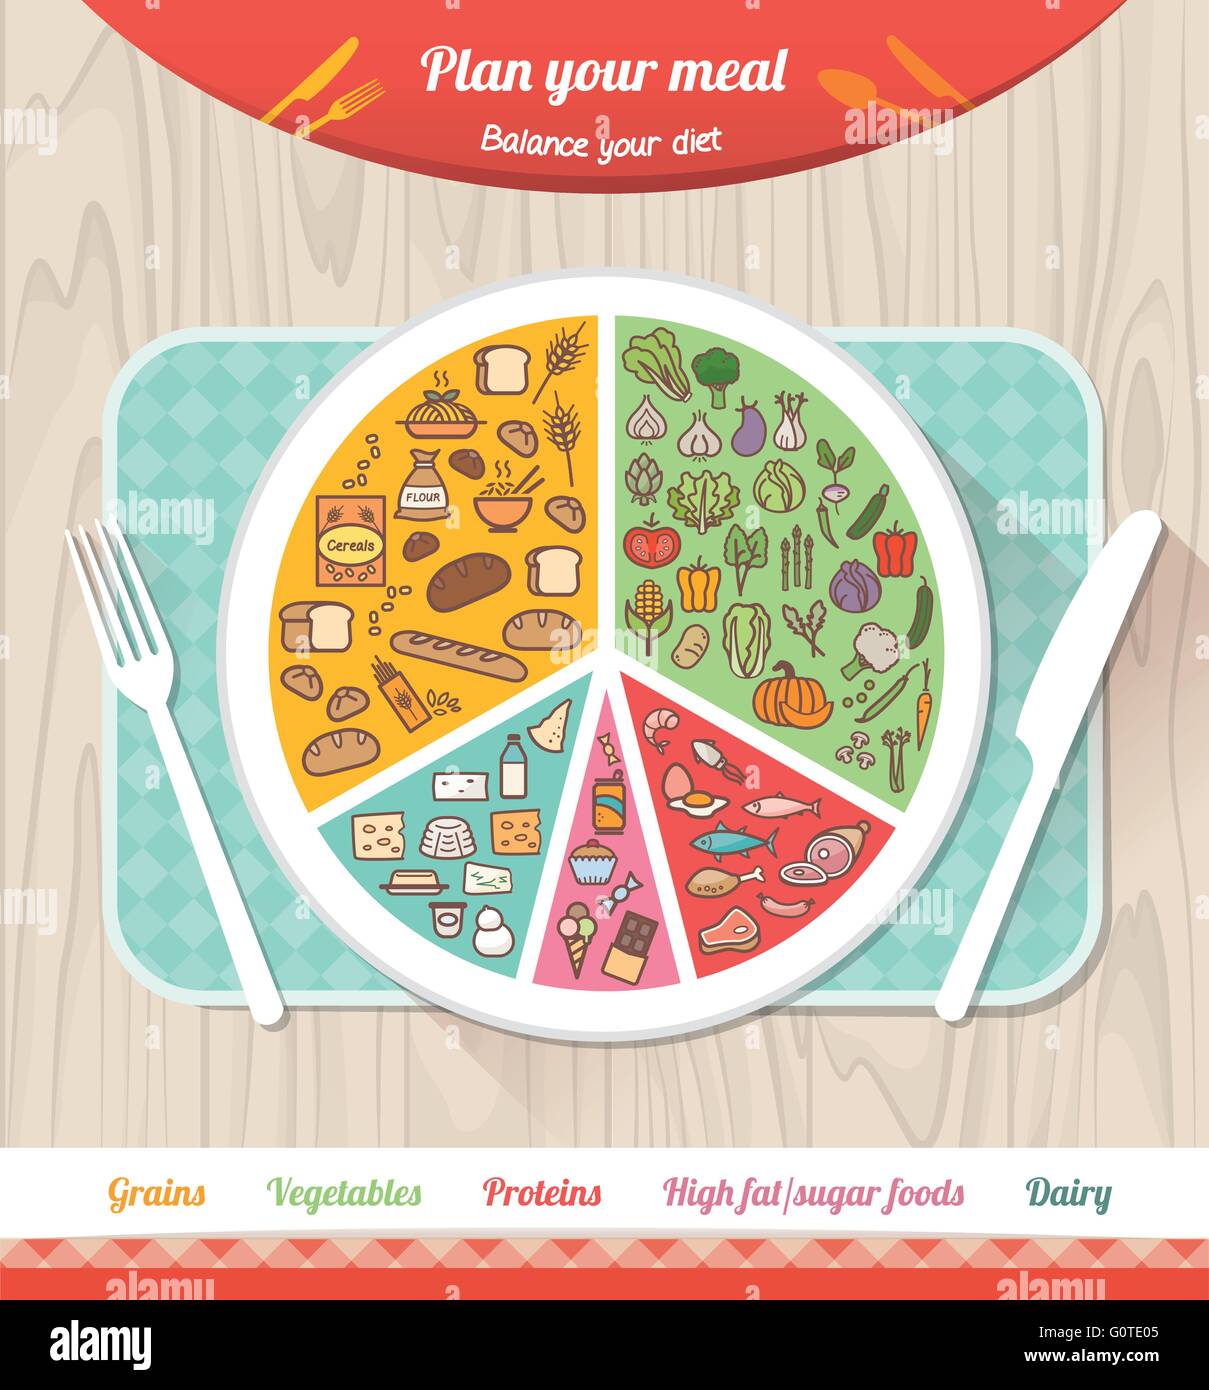 Planen Sie Ihre Mahlzeit Infografik mit Schale, Diagramm und Symbolen, gesunde Ernährung und Diät-Konzept Stock Vektor